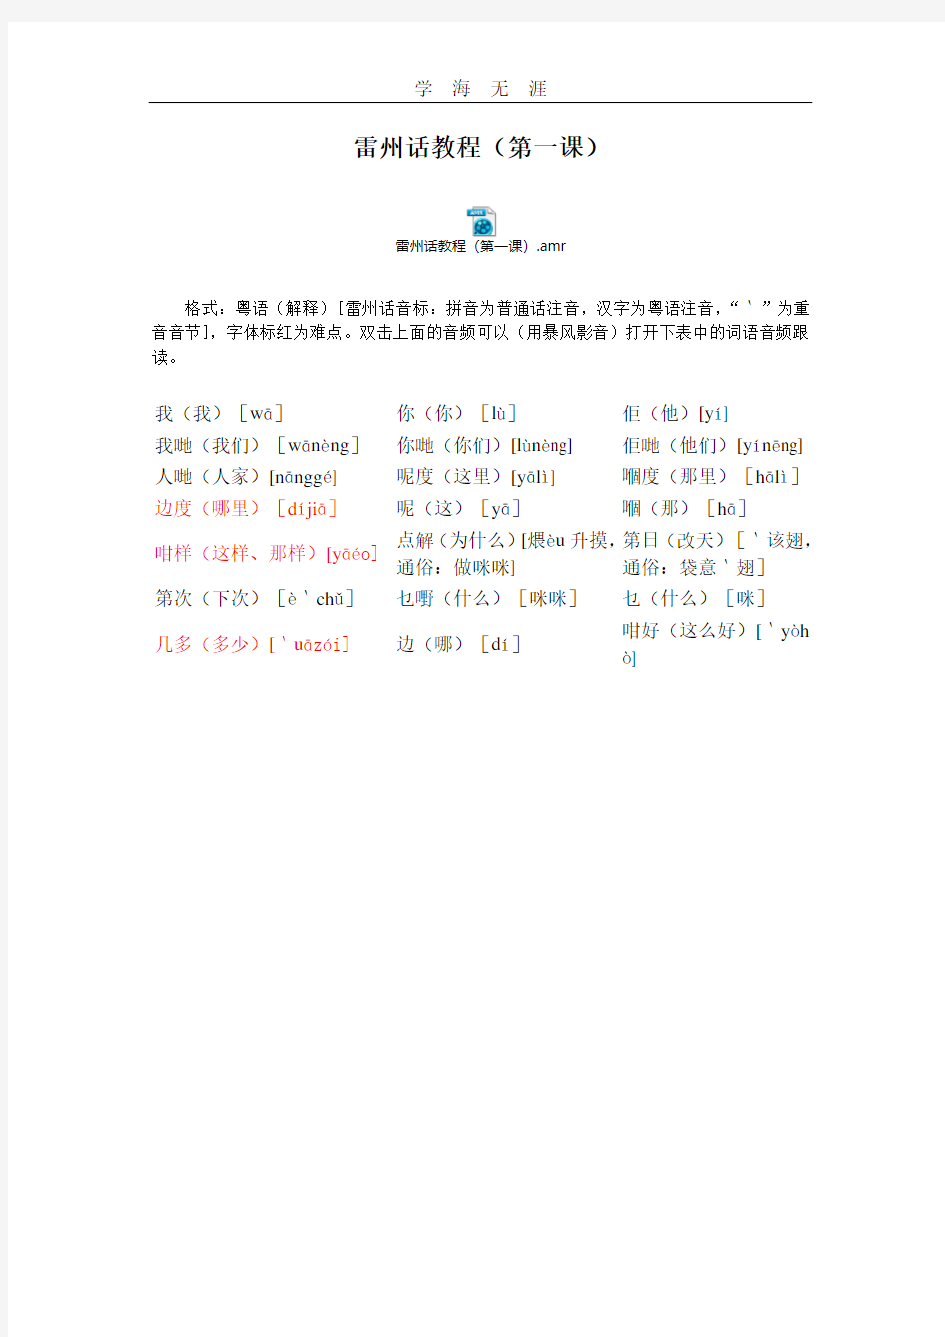 2020年整理雷州话教程(第一课).pdf